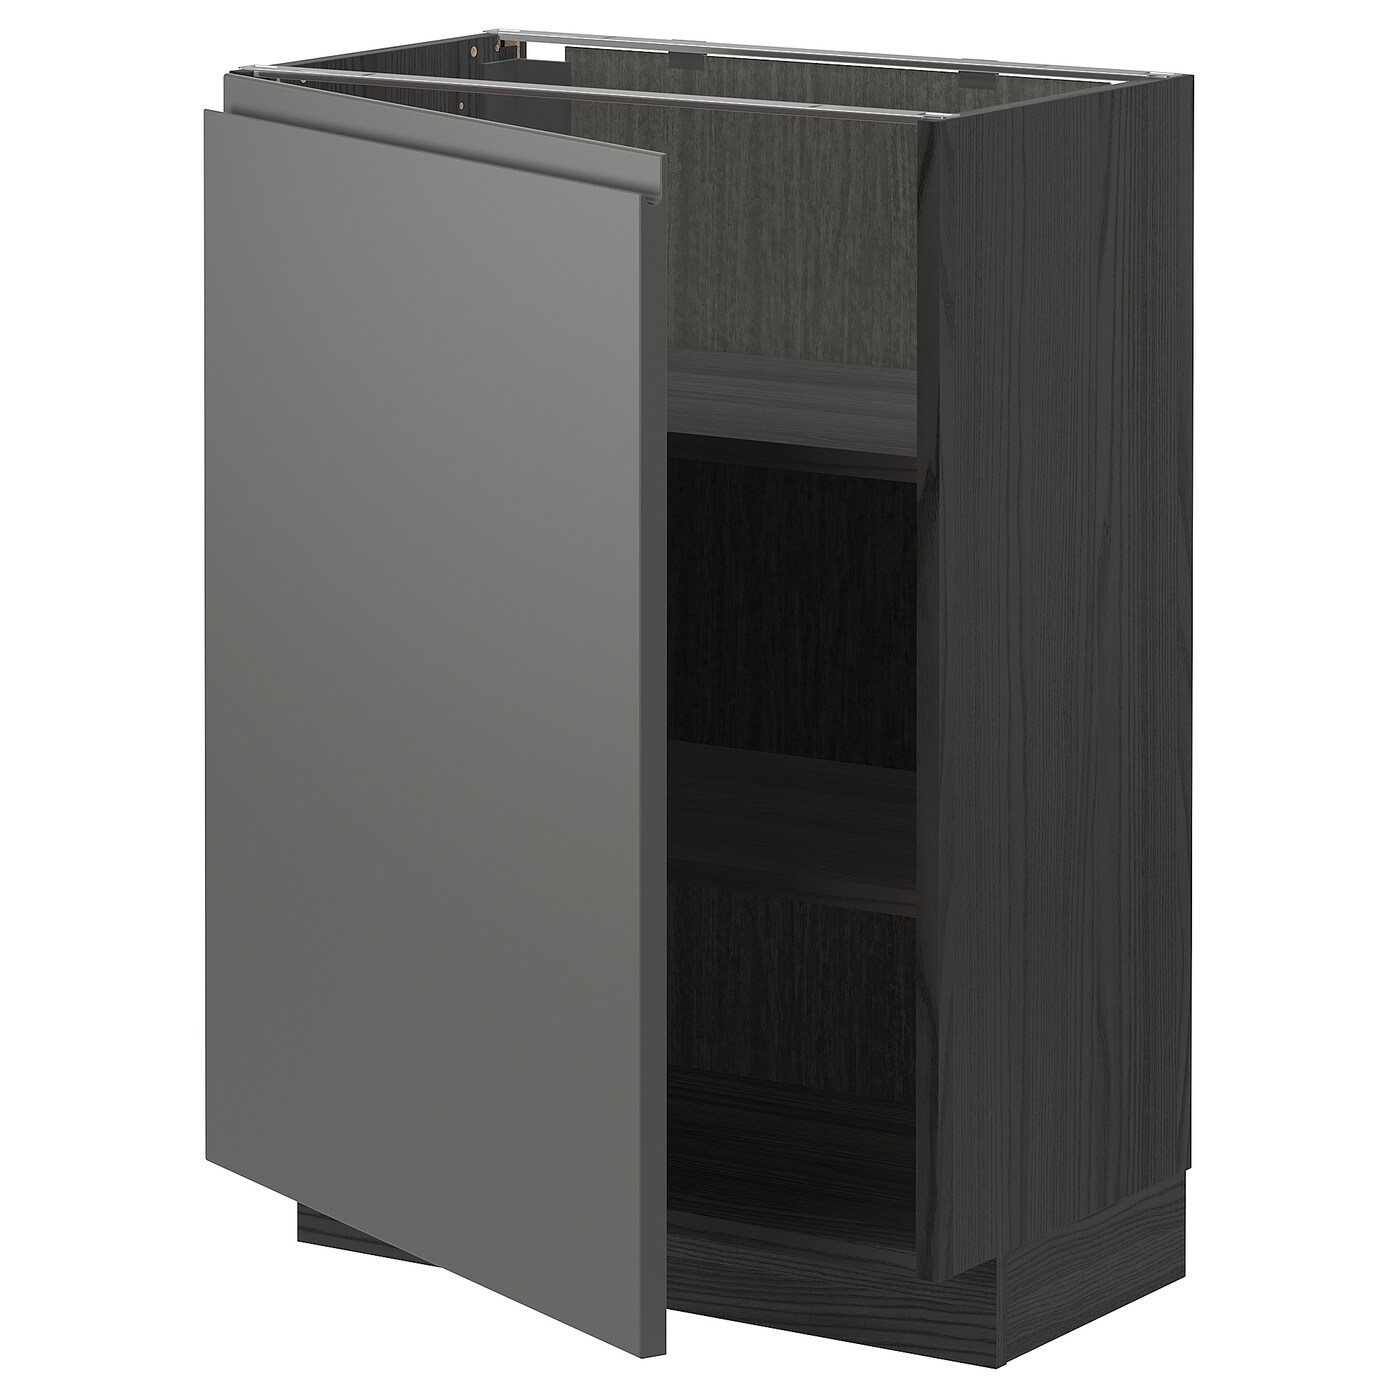 Напольный шкаф - METOD IKEA/ МЕТОД ИКЕА,  88х60 см, серый/коричневый